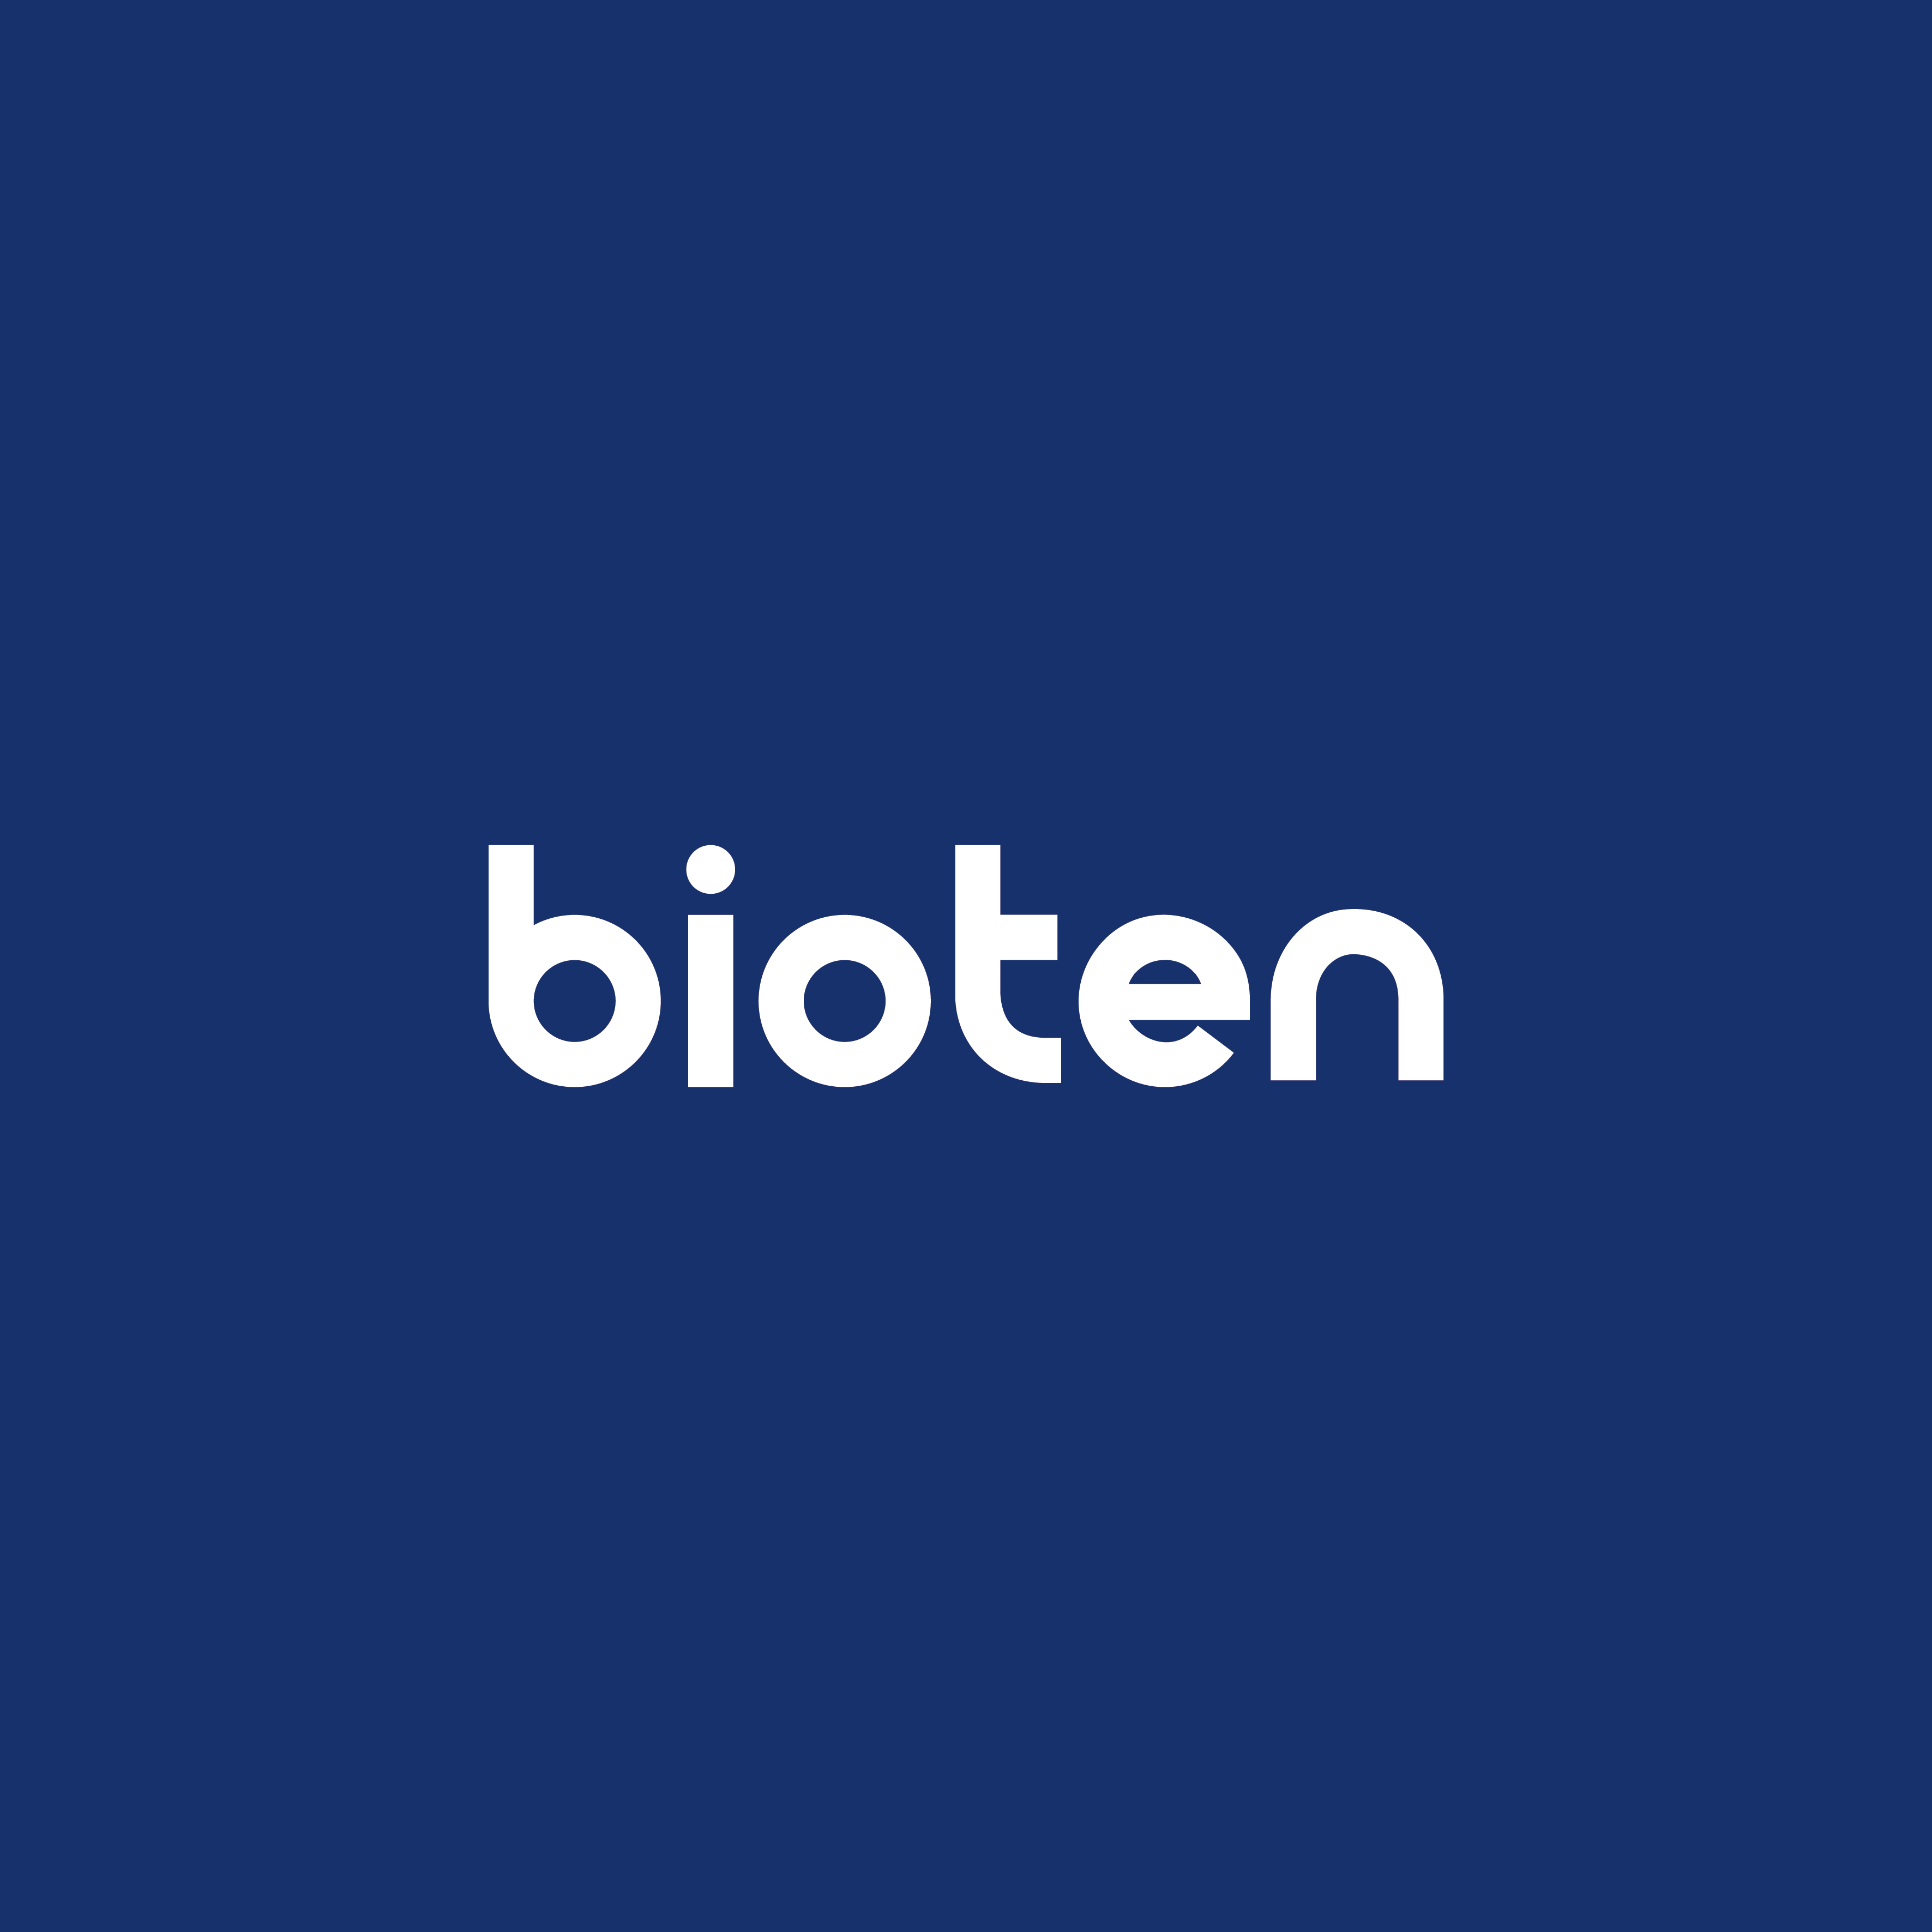 Bioten co., Ltd